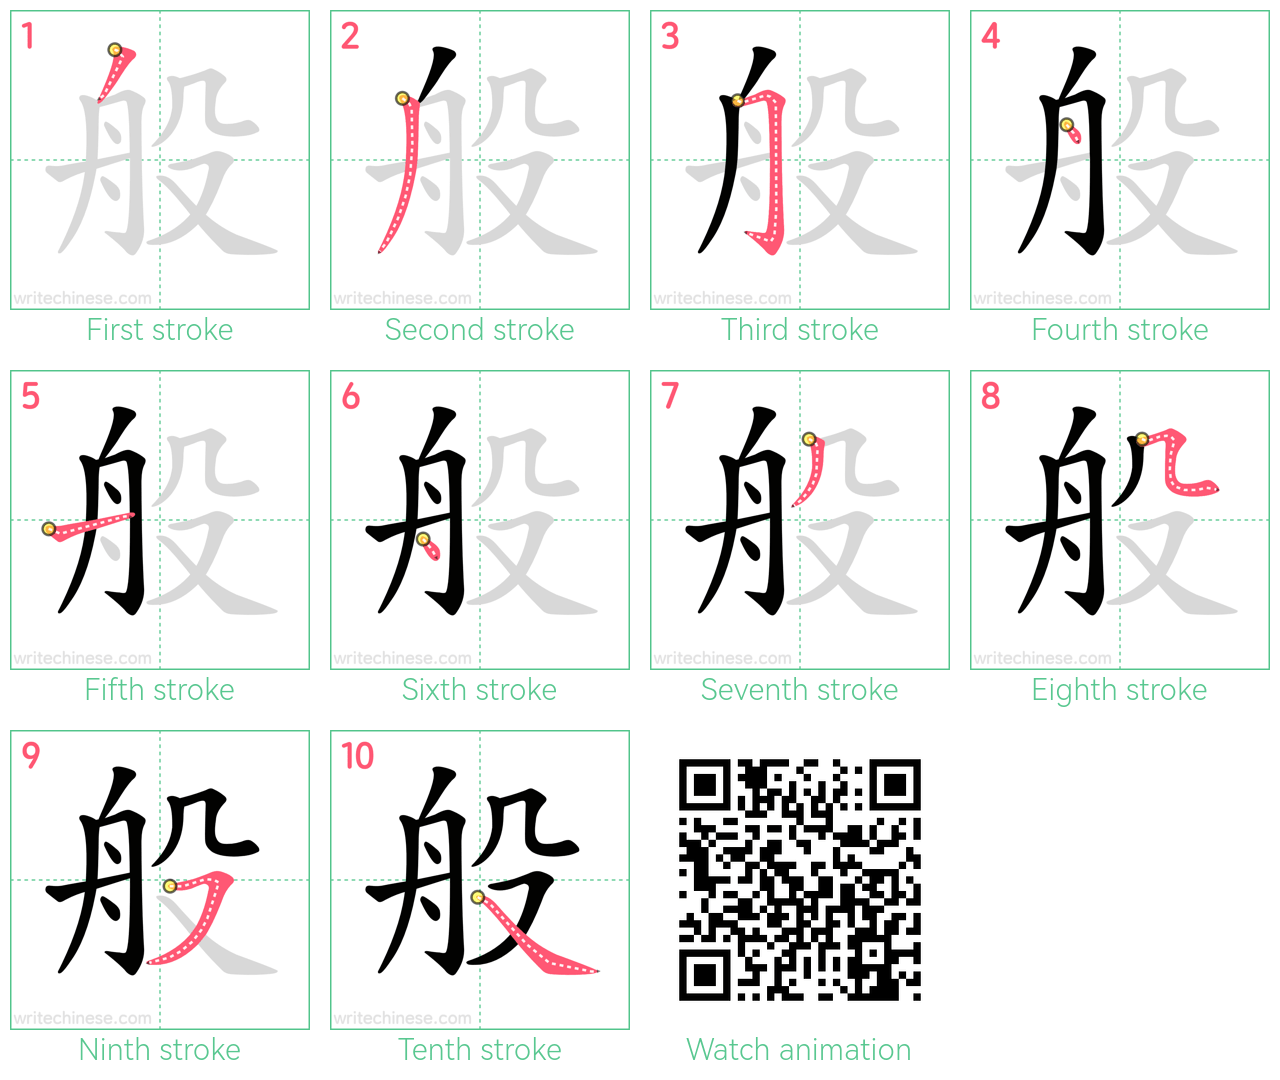 般 step-by-step stroke order diagrams